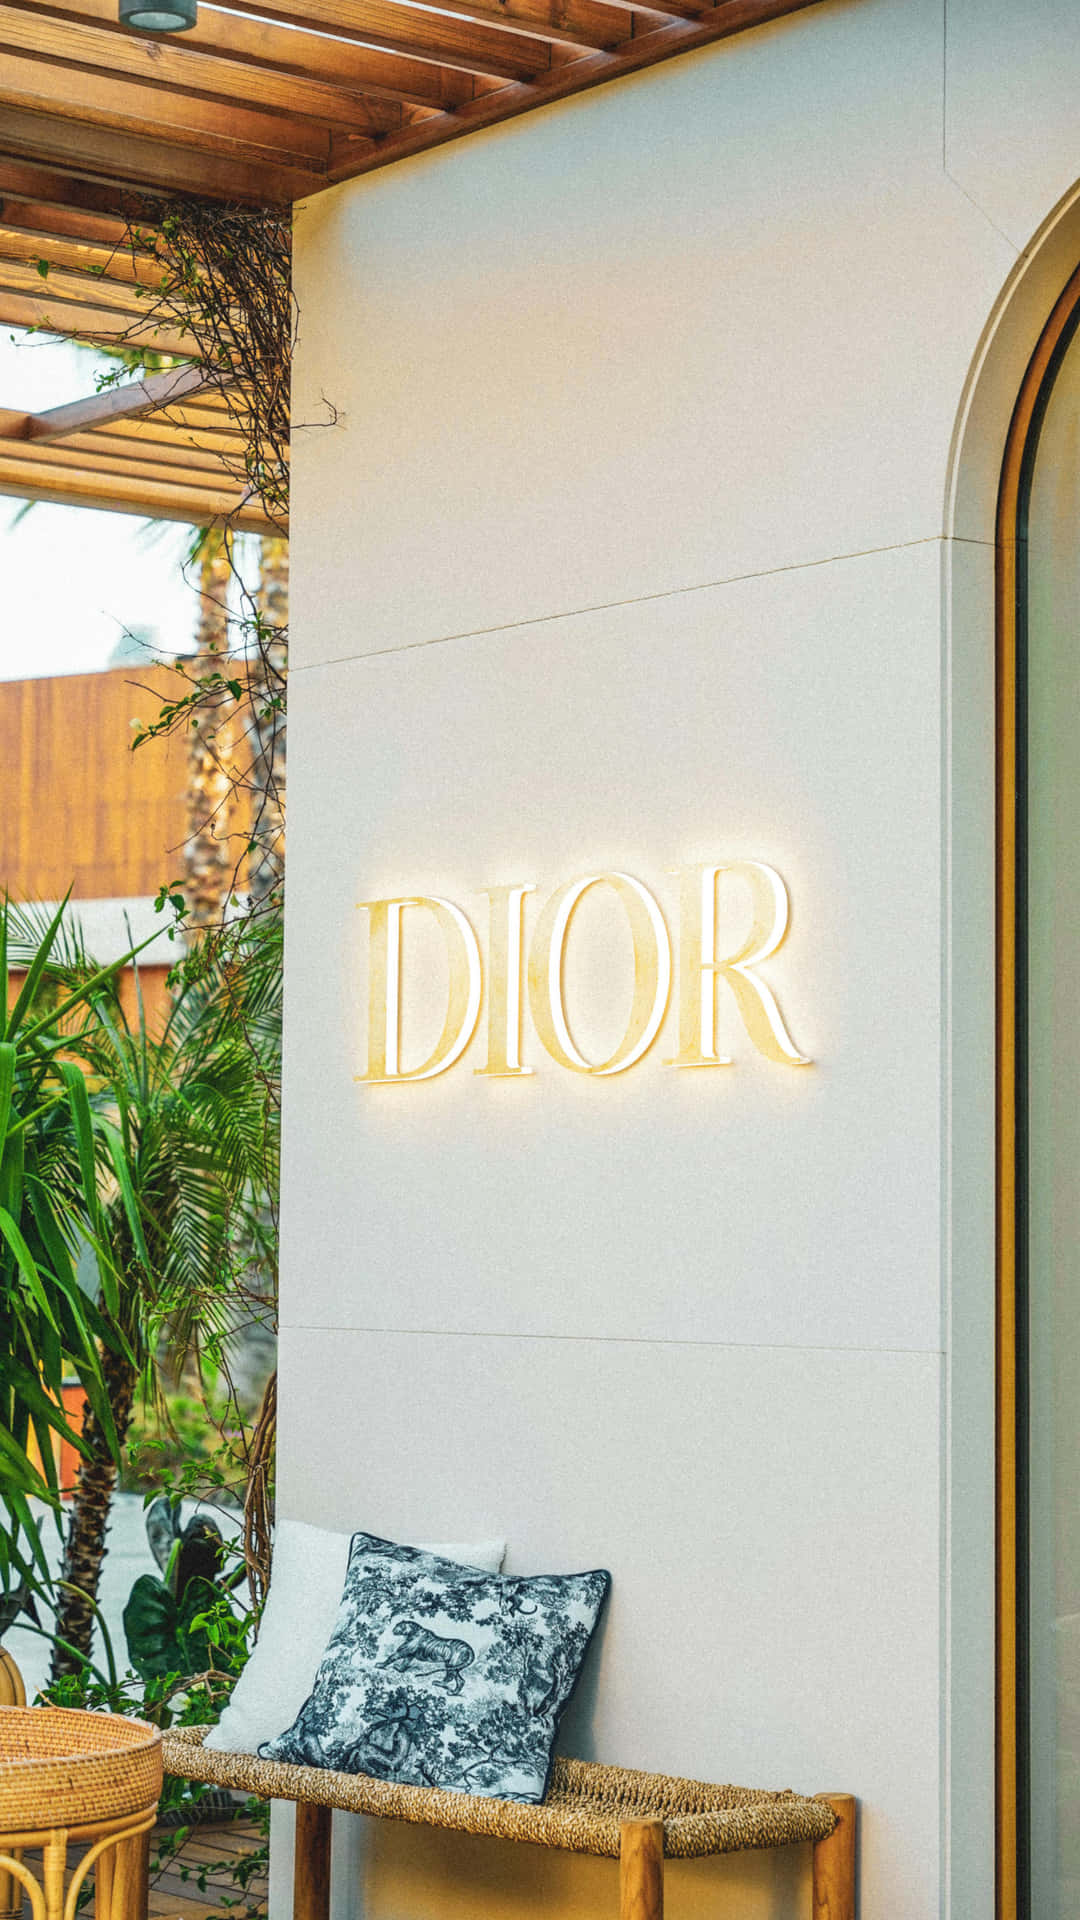 Dior Storefront Signage Wallpaper